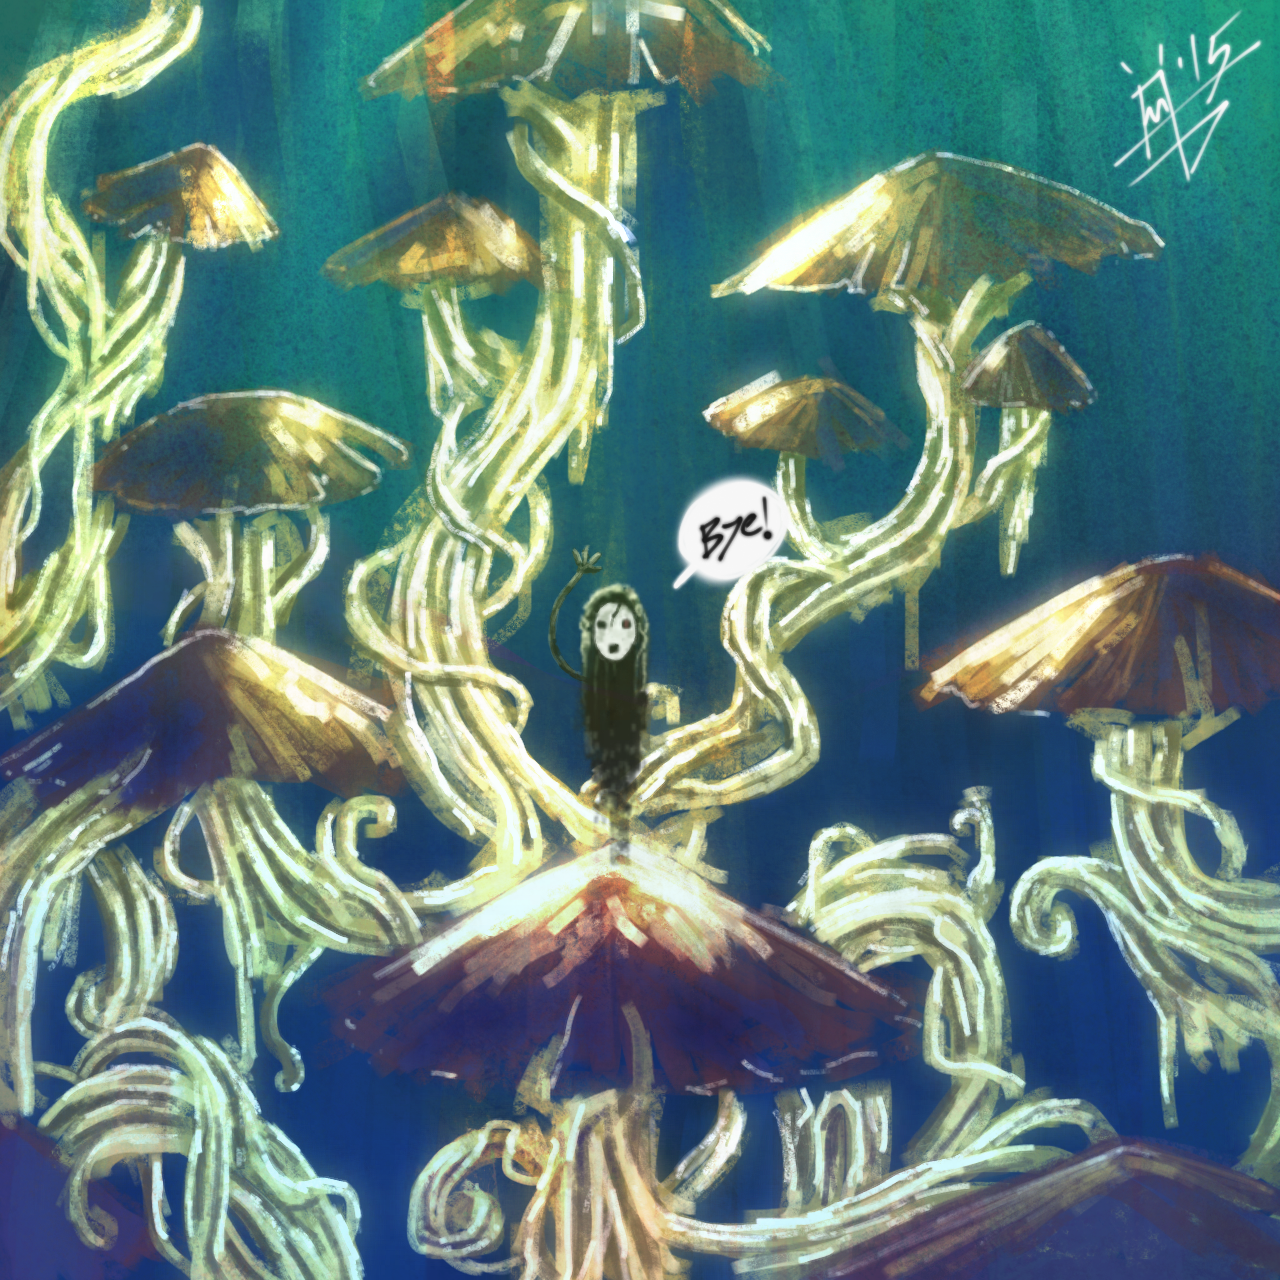 Mushroom spirits